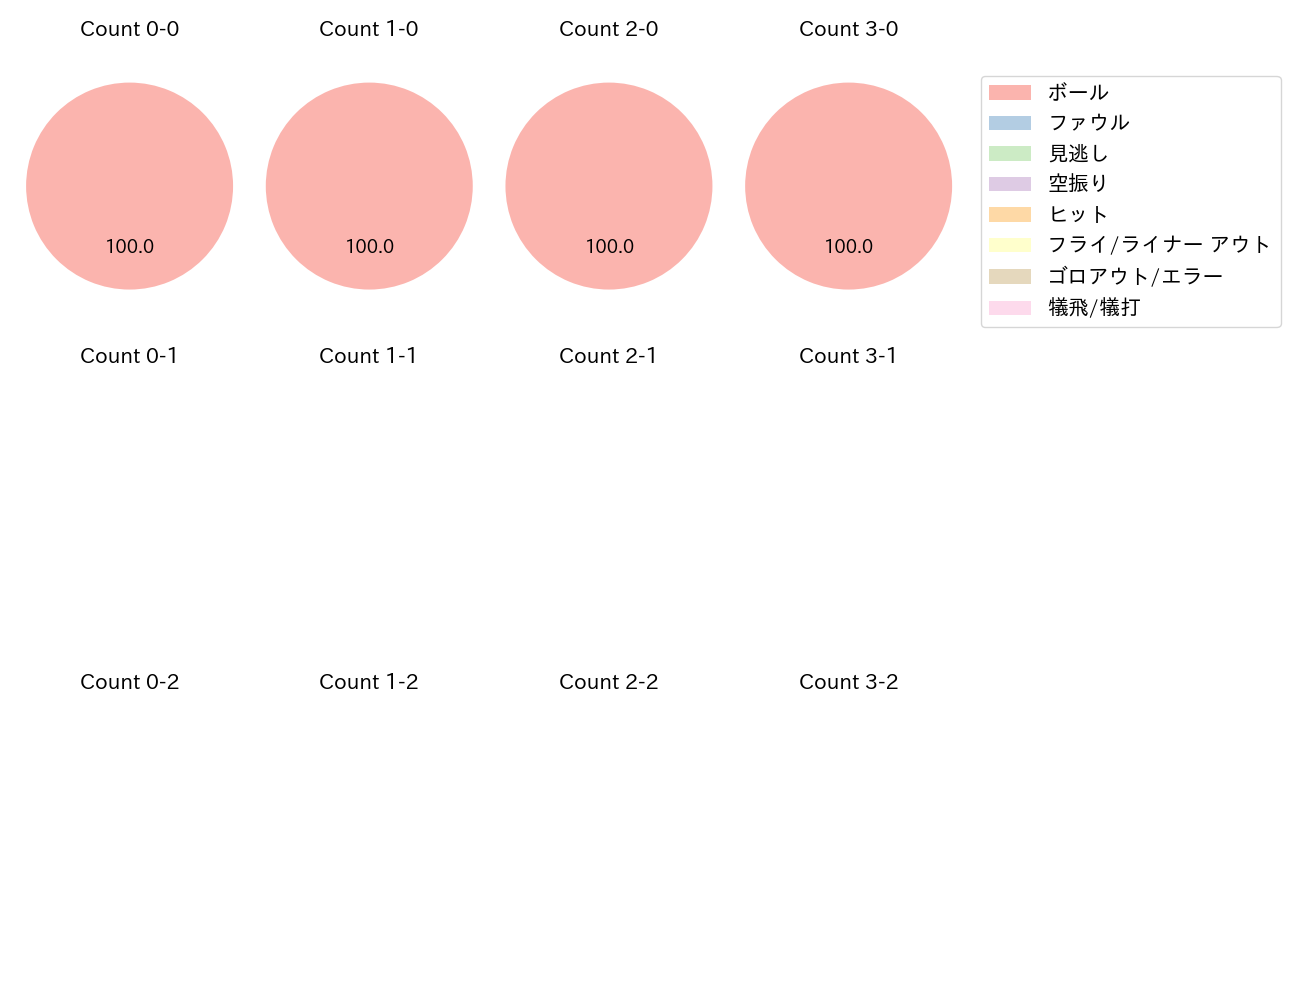 小島 和哉の球数分布(2022年5月)